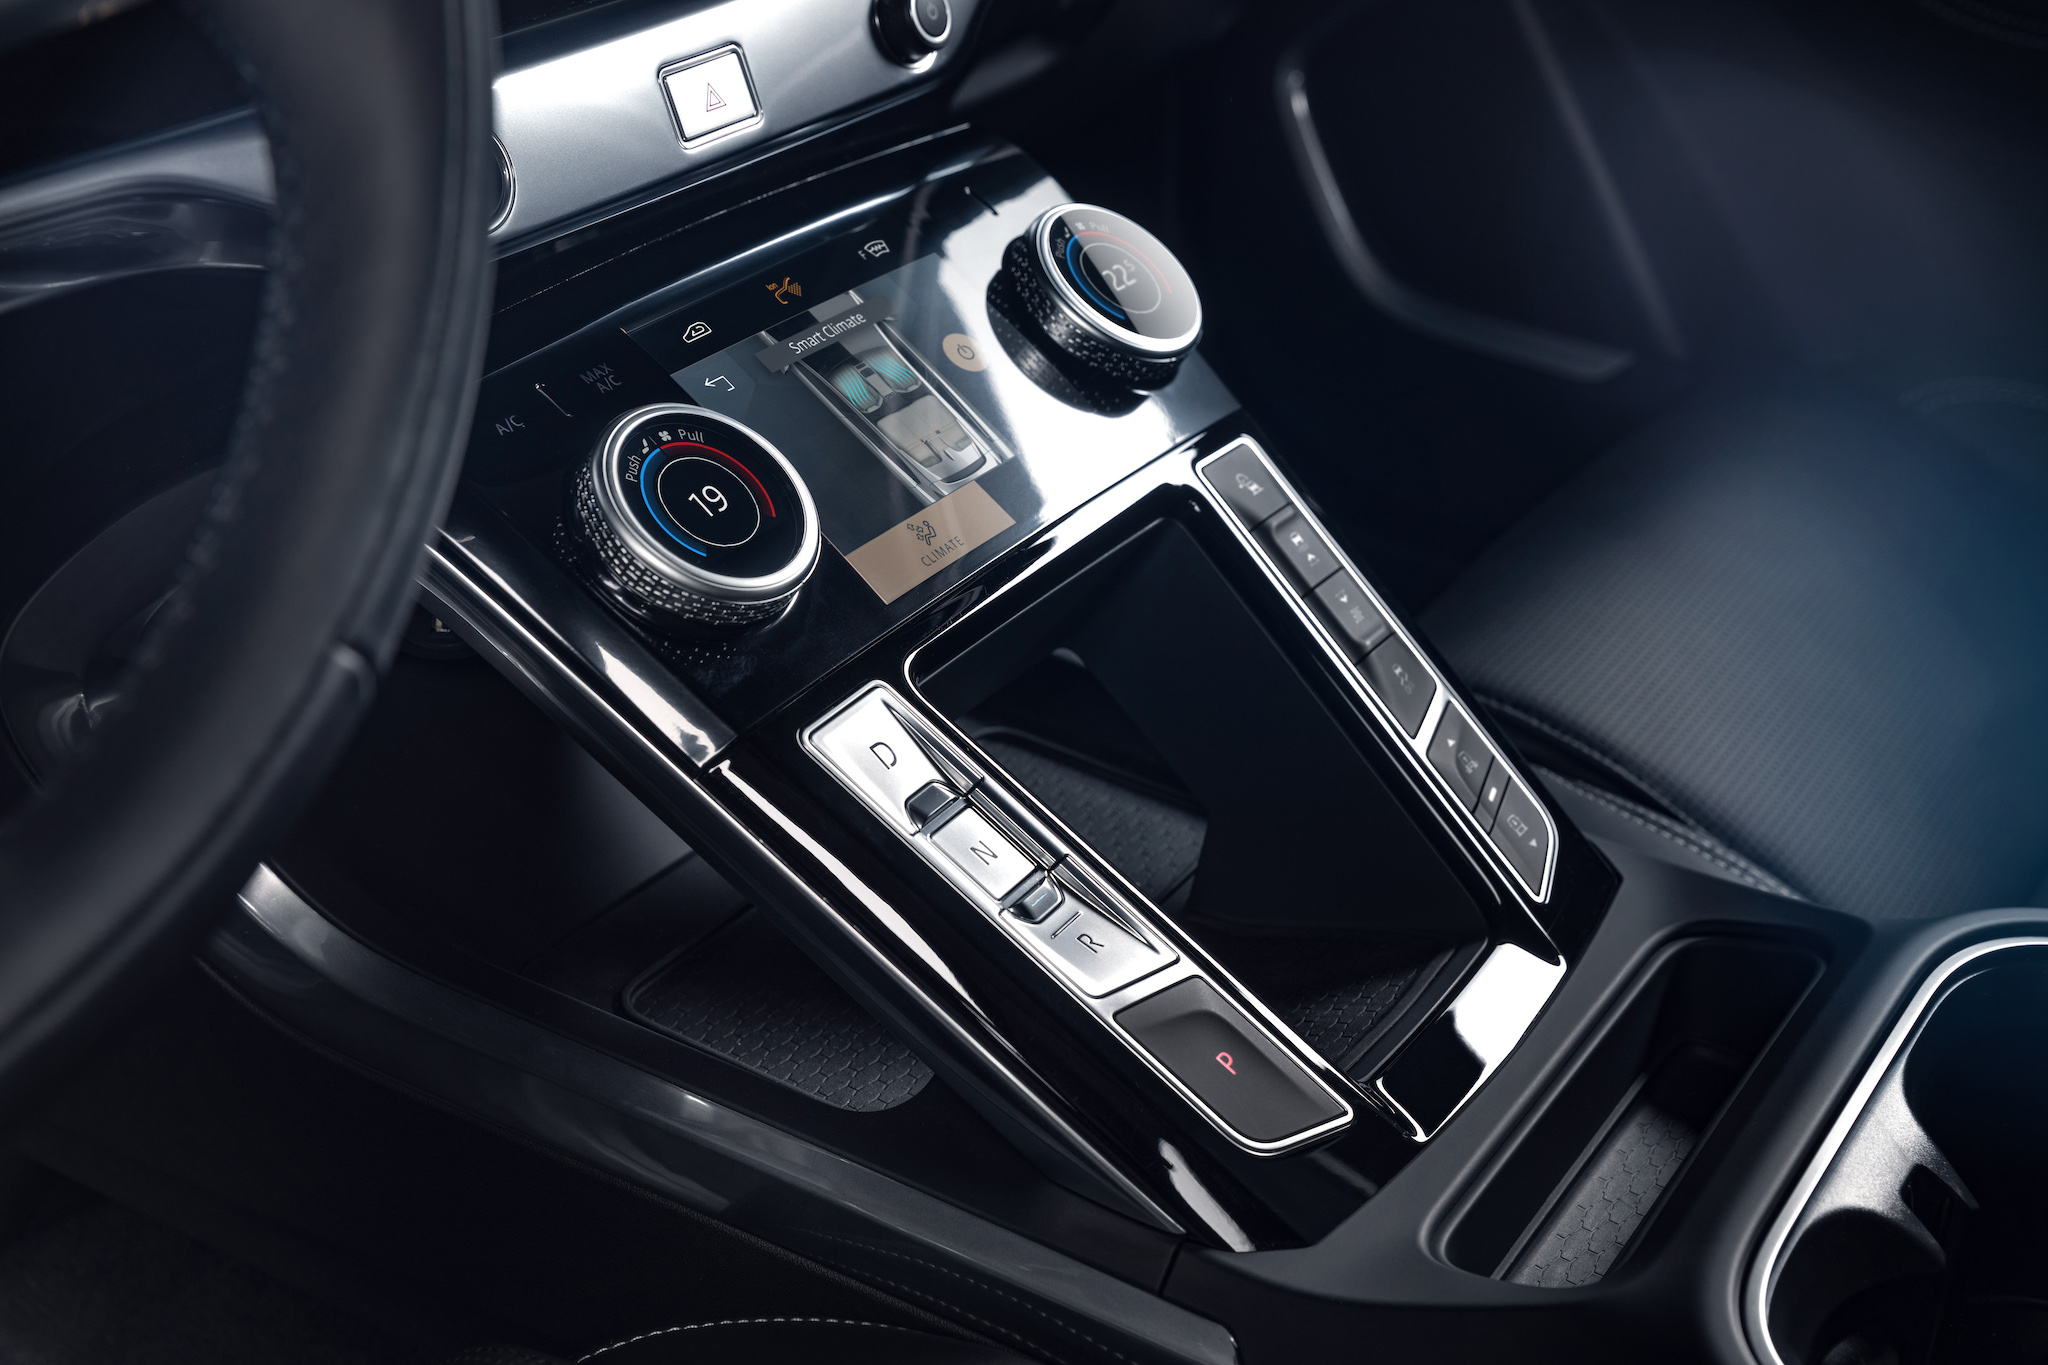 新年式 I-PACE 可選配無線充電板，將安裝於懸浮式中控台下方。此外，「智慧型手機套件」支援 Apple CarPlay 及 Android Auto 系統。